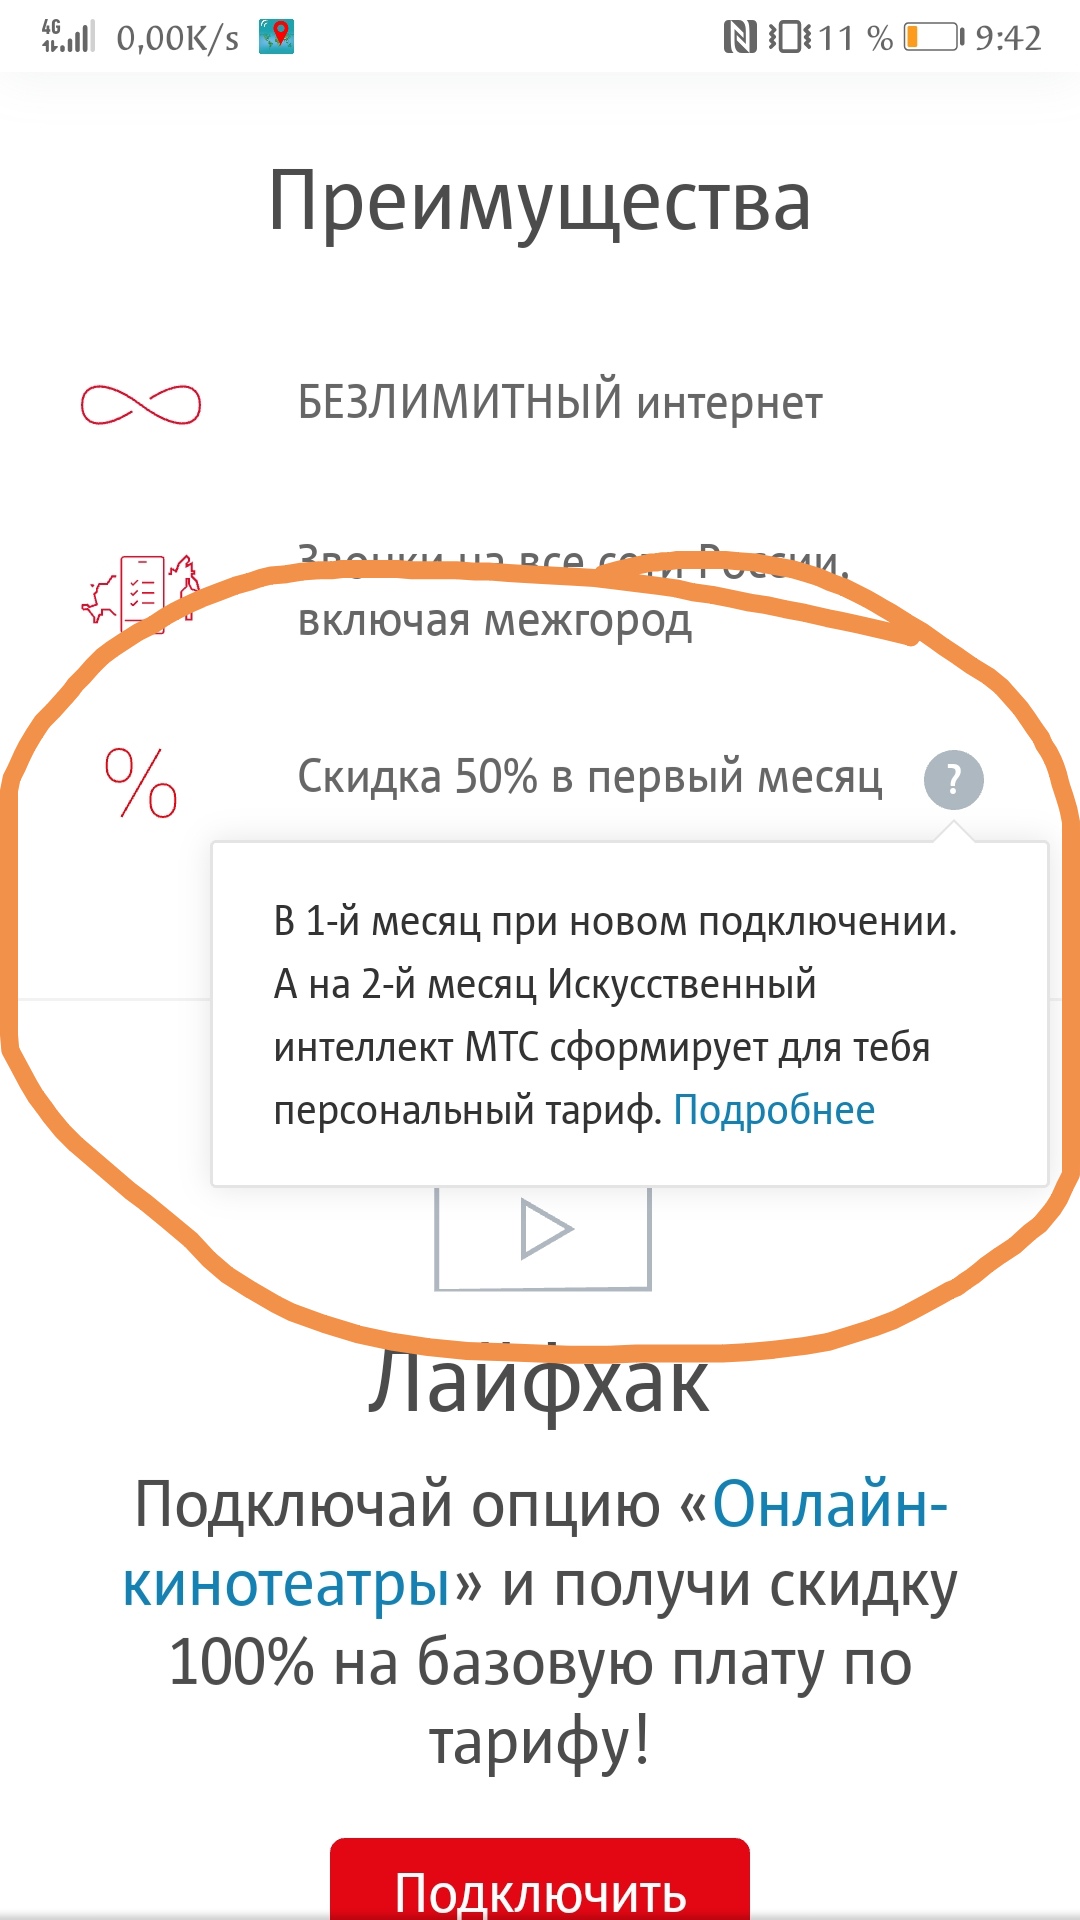 Саяногорск Инфо - screenshot_20200104_094309.jpg, Скачано: 452